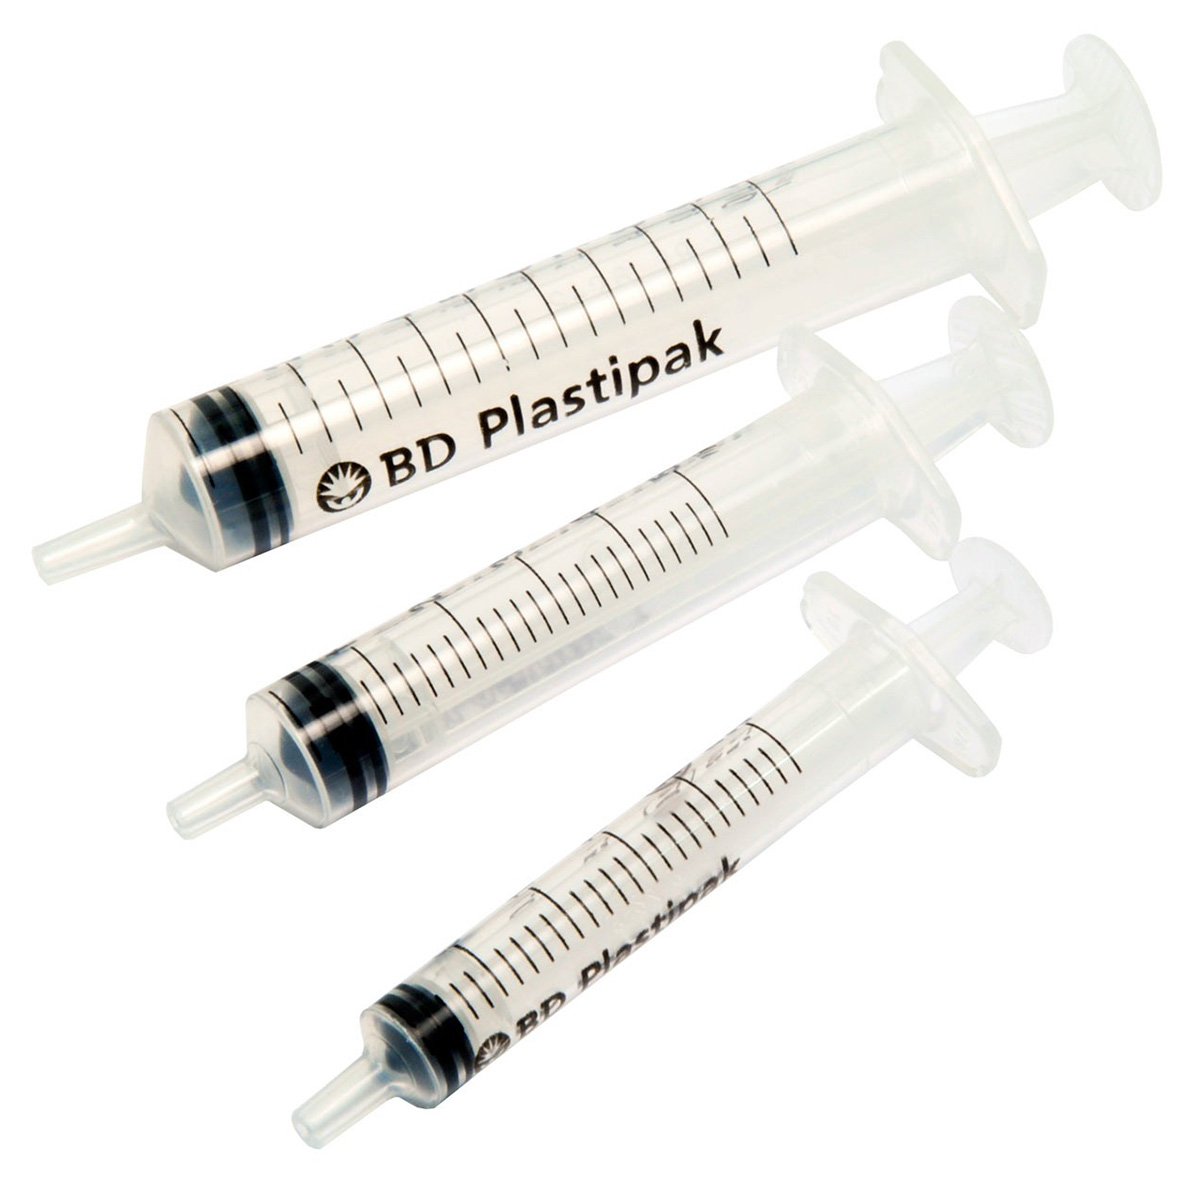 BD Plastipak 3-Part Syringe Luer-Slip